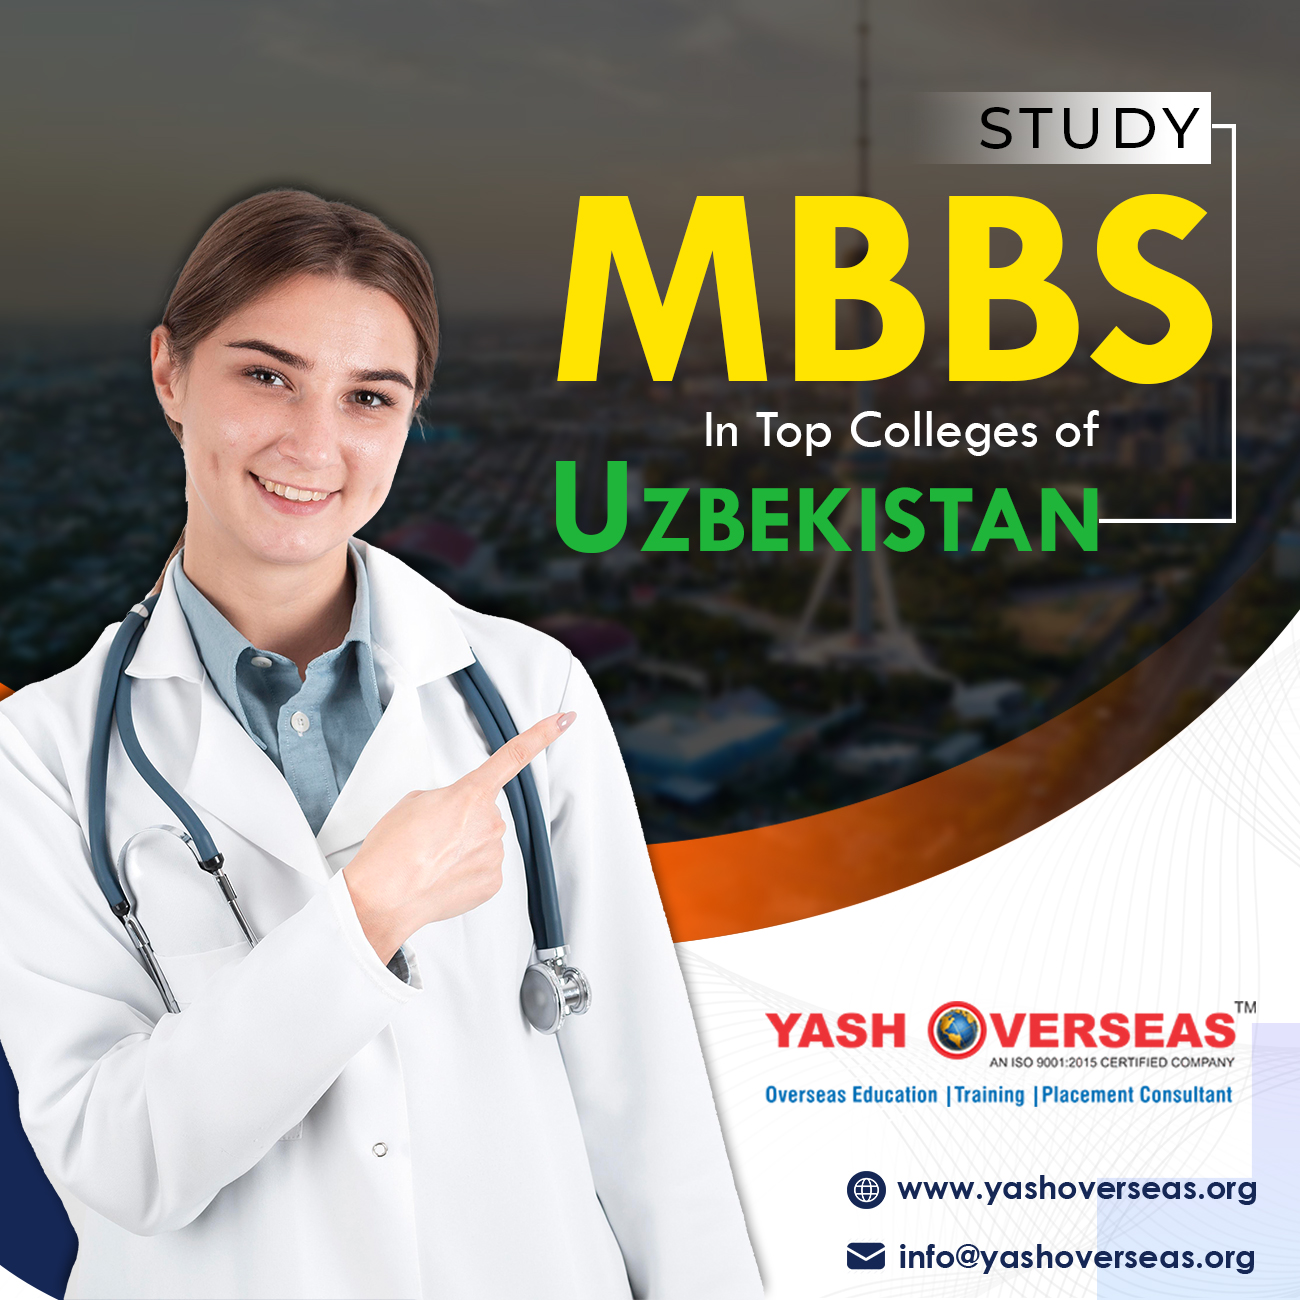 MBBS In Uzbekistan